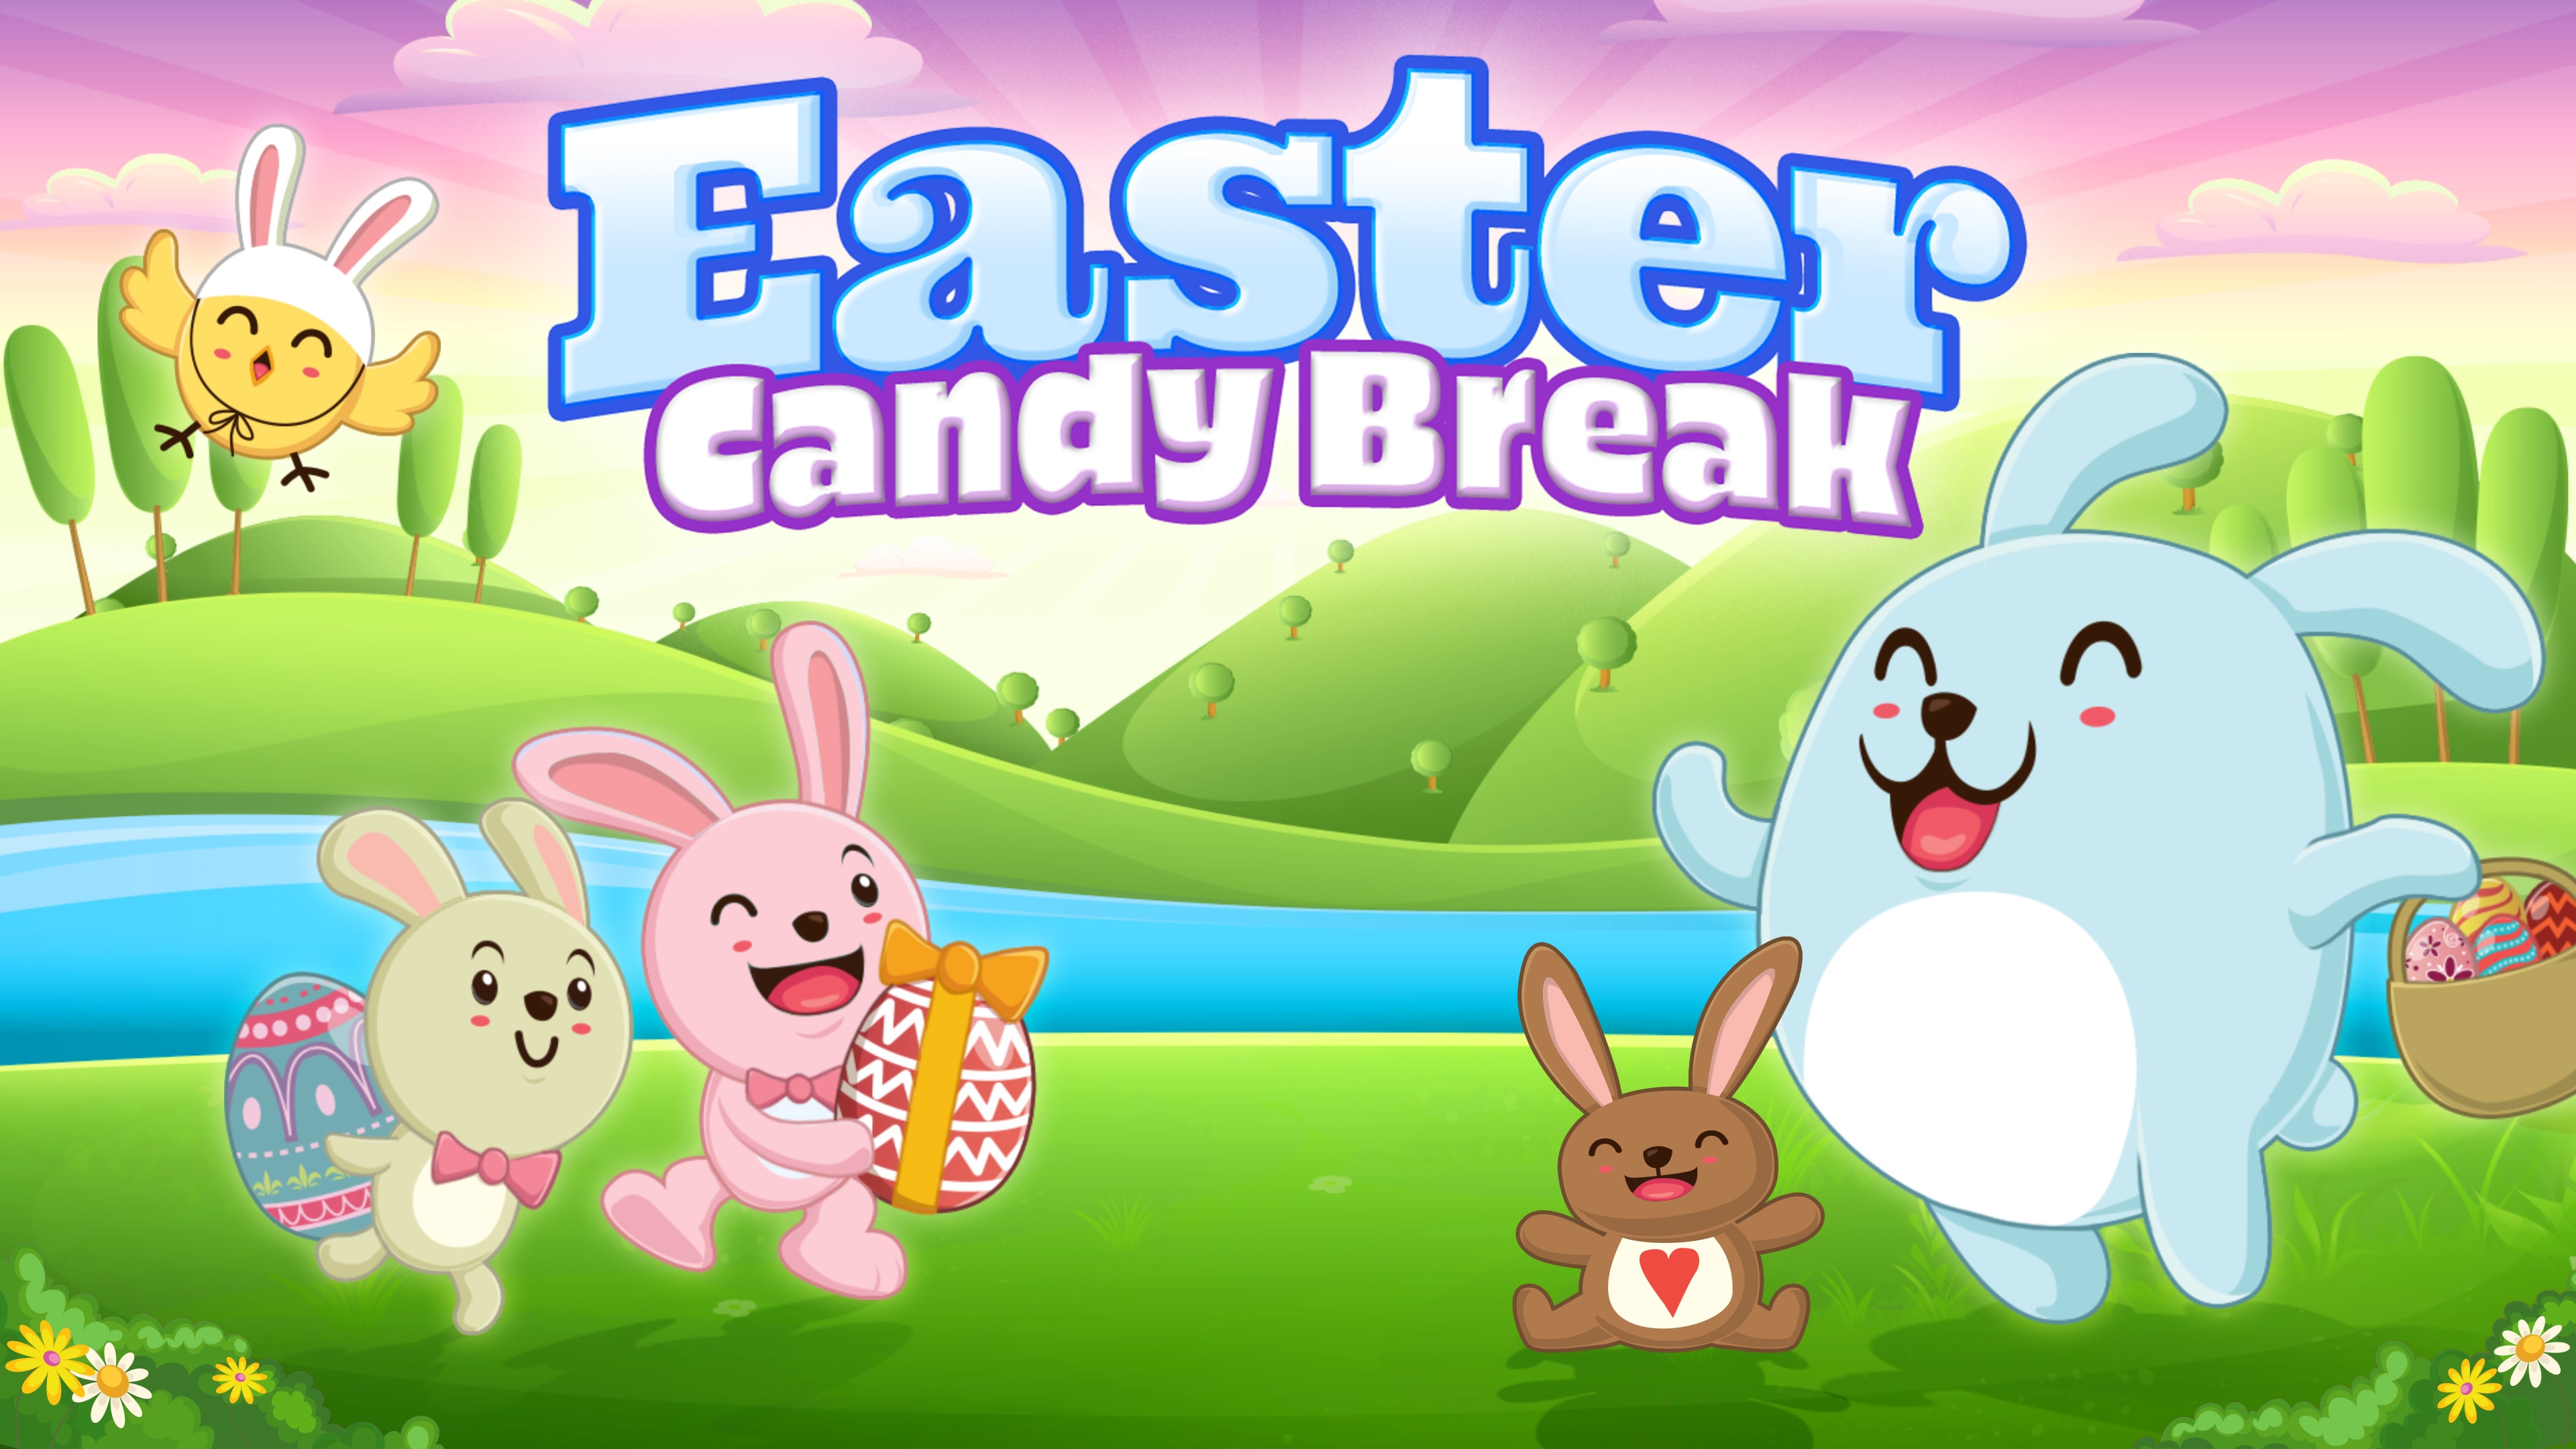 Easter Candy Break